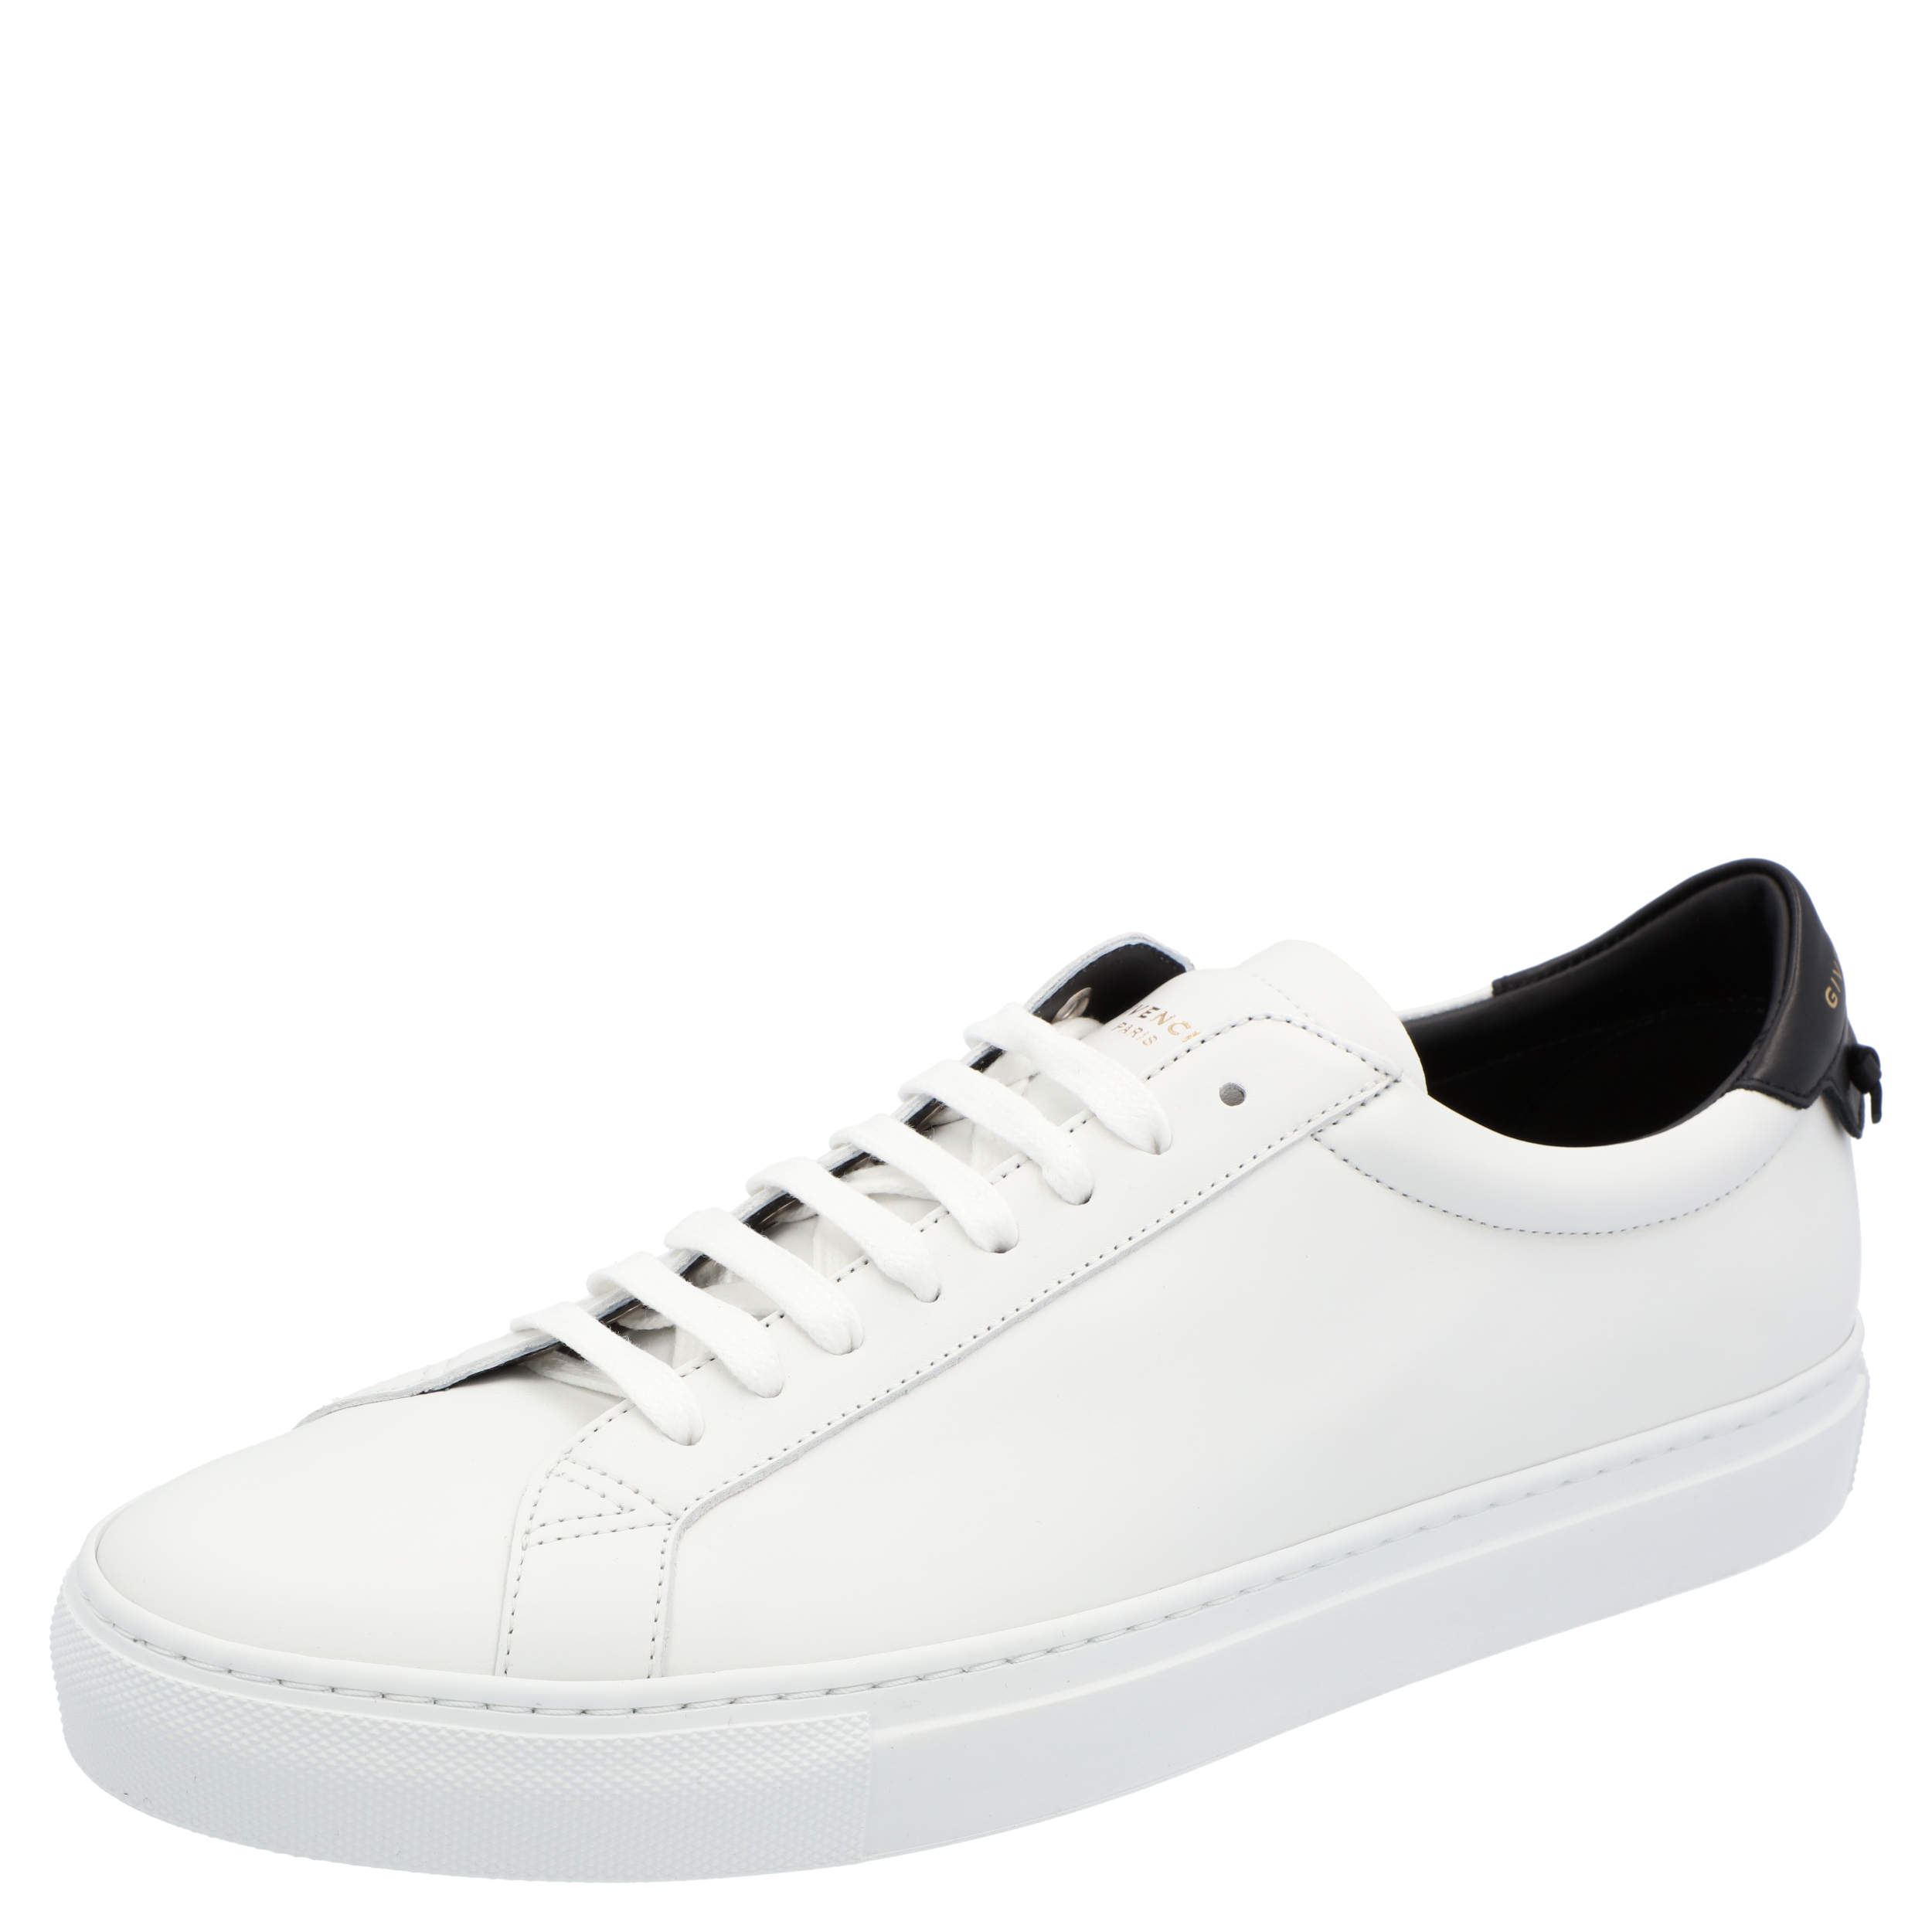 Givenchy White Urban Street Sneakers Size EU 40